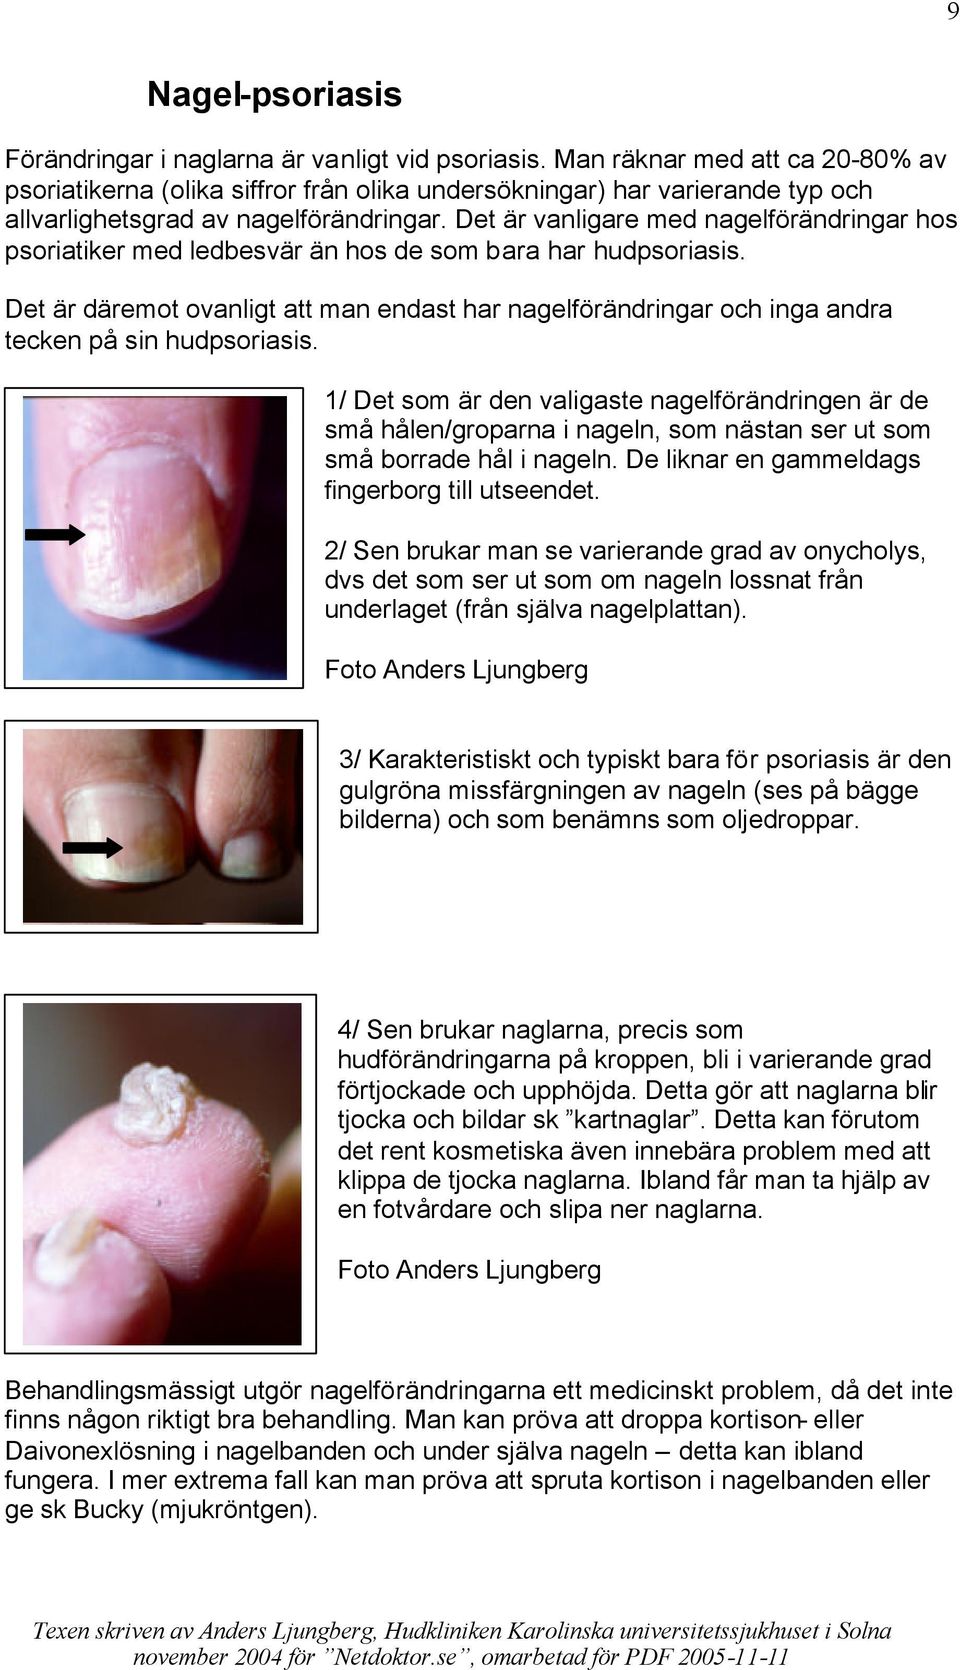 Det är vanligare med nagelförändringar hos psoriatiker med ledbesvär än hos de som bara har hudpsoriasis.